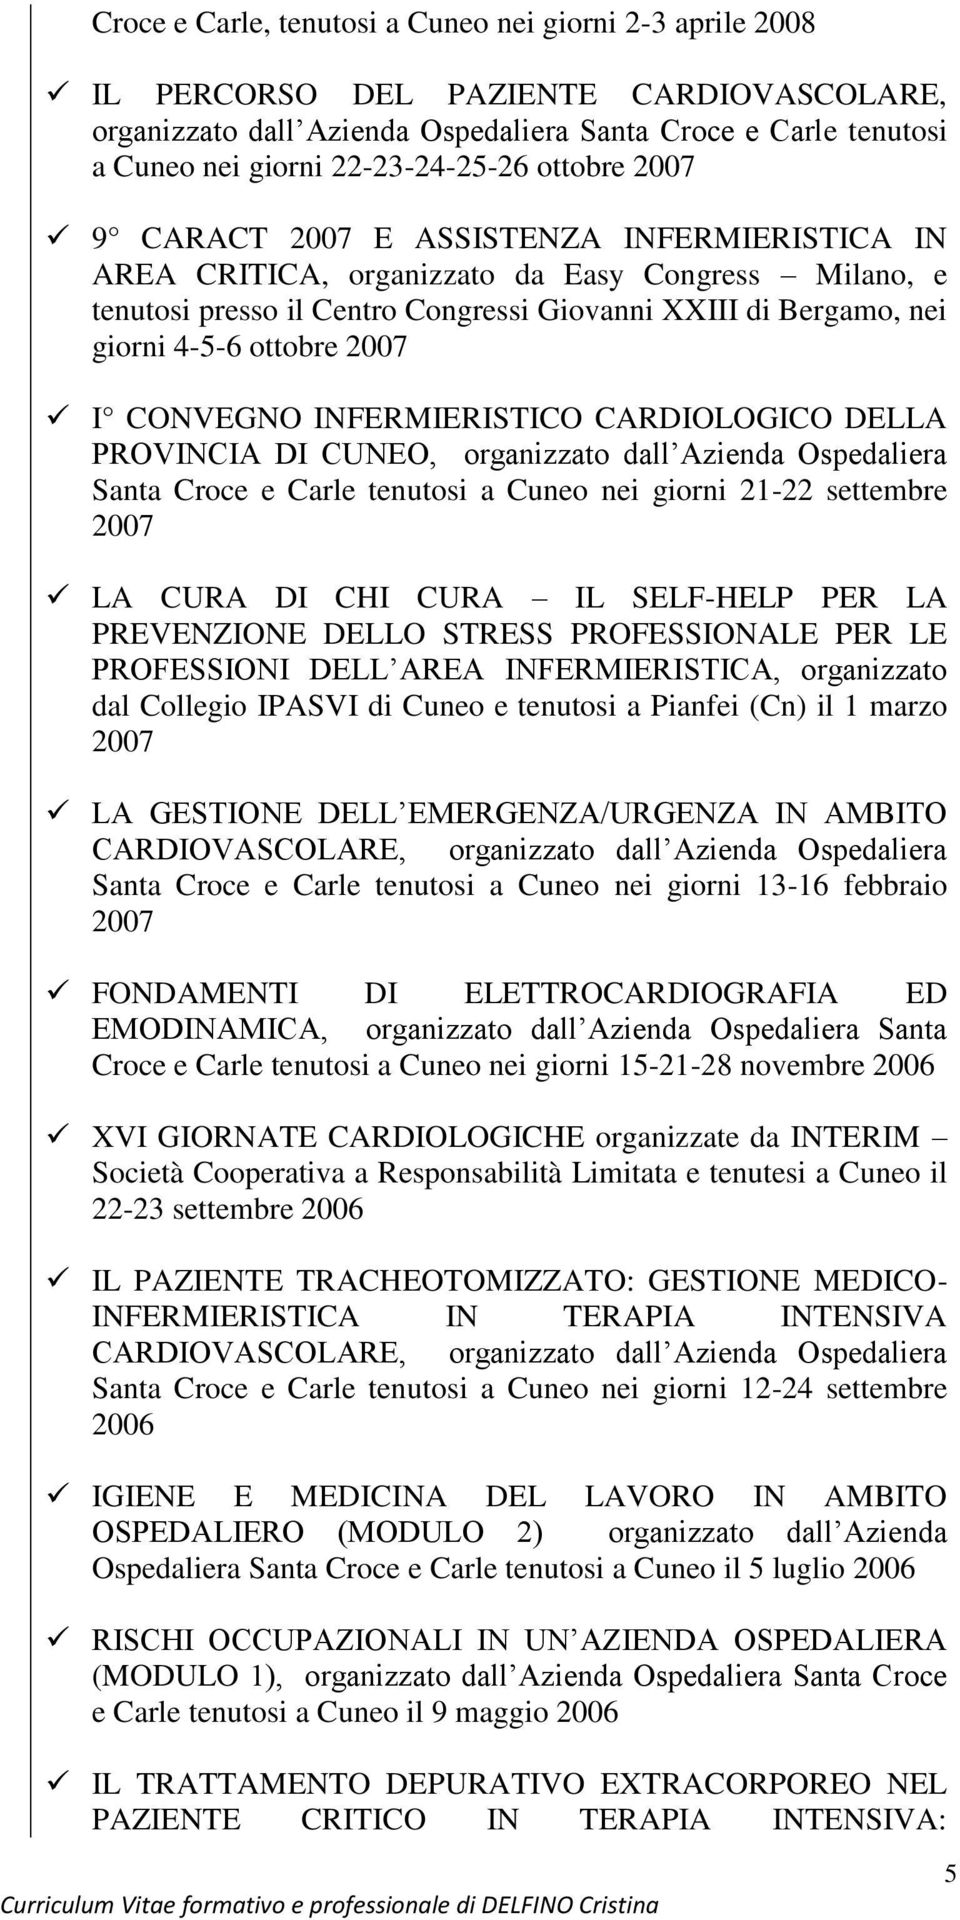 giorni 4-5-6 ottobre 2007 I CONVEGNO INFERMIERISTICO CARDIOLOGICO DELLA PROVINCIA DI CUNEO, organizzato dall Azienda Ospedaliera Santa Croce e Carle tenutosi a Cuneo nei giorni 21-22 settembre 2007